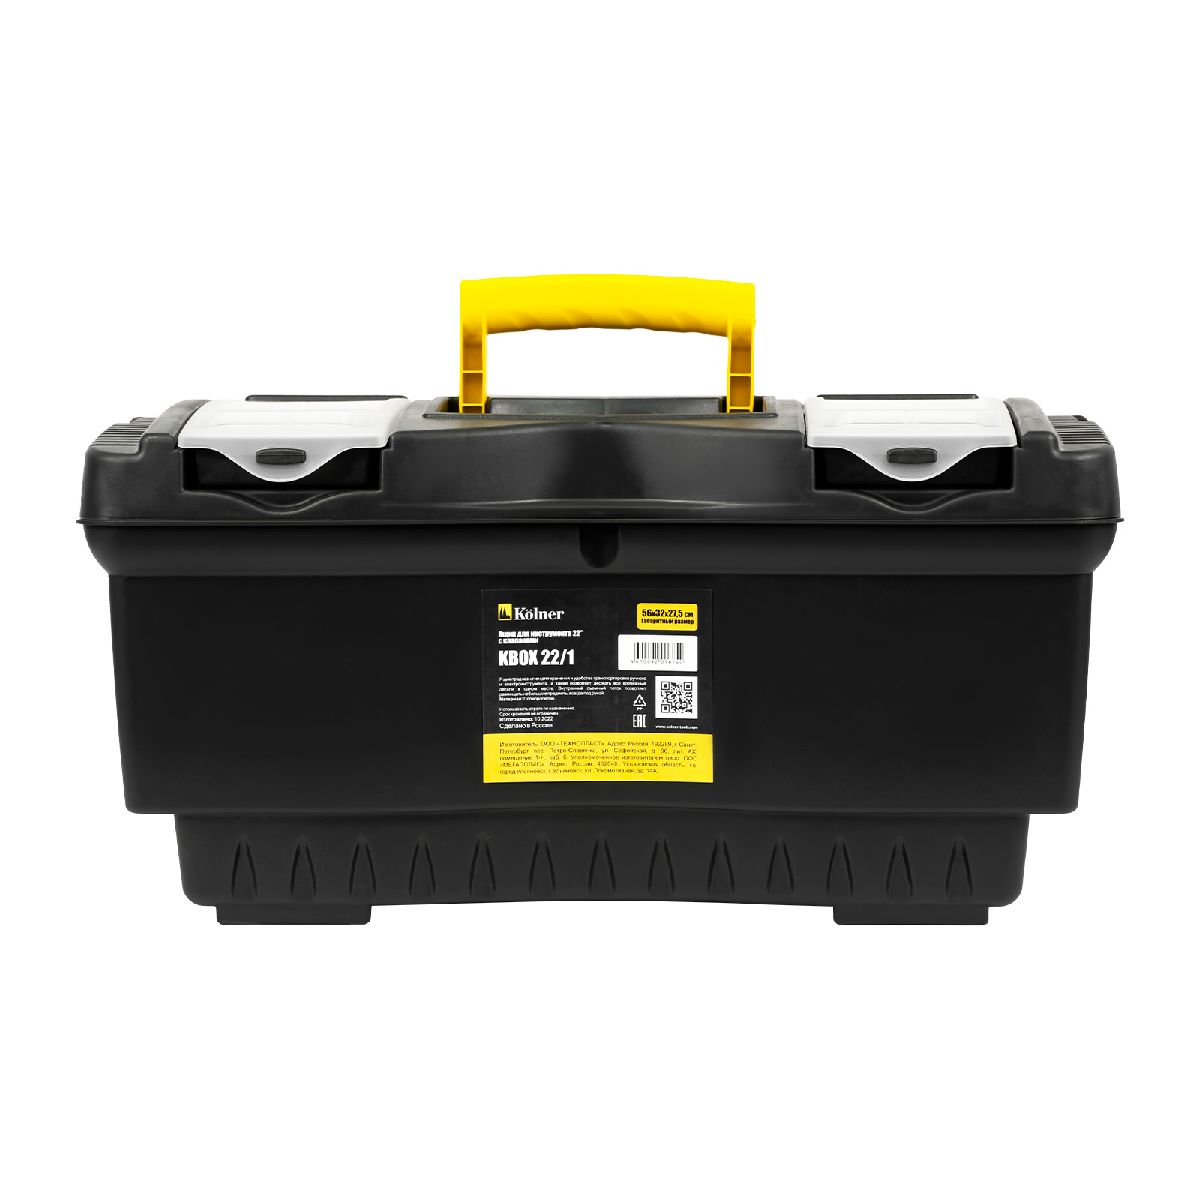 Ящик для инструментов пластиковый KOLNER KBOX 22 1 с клапанами (кн22-1бокс)Купить